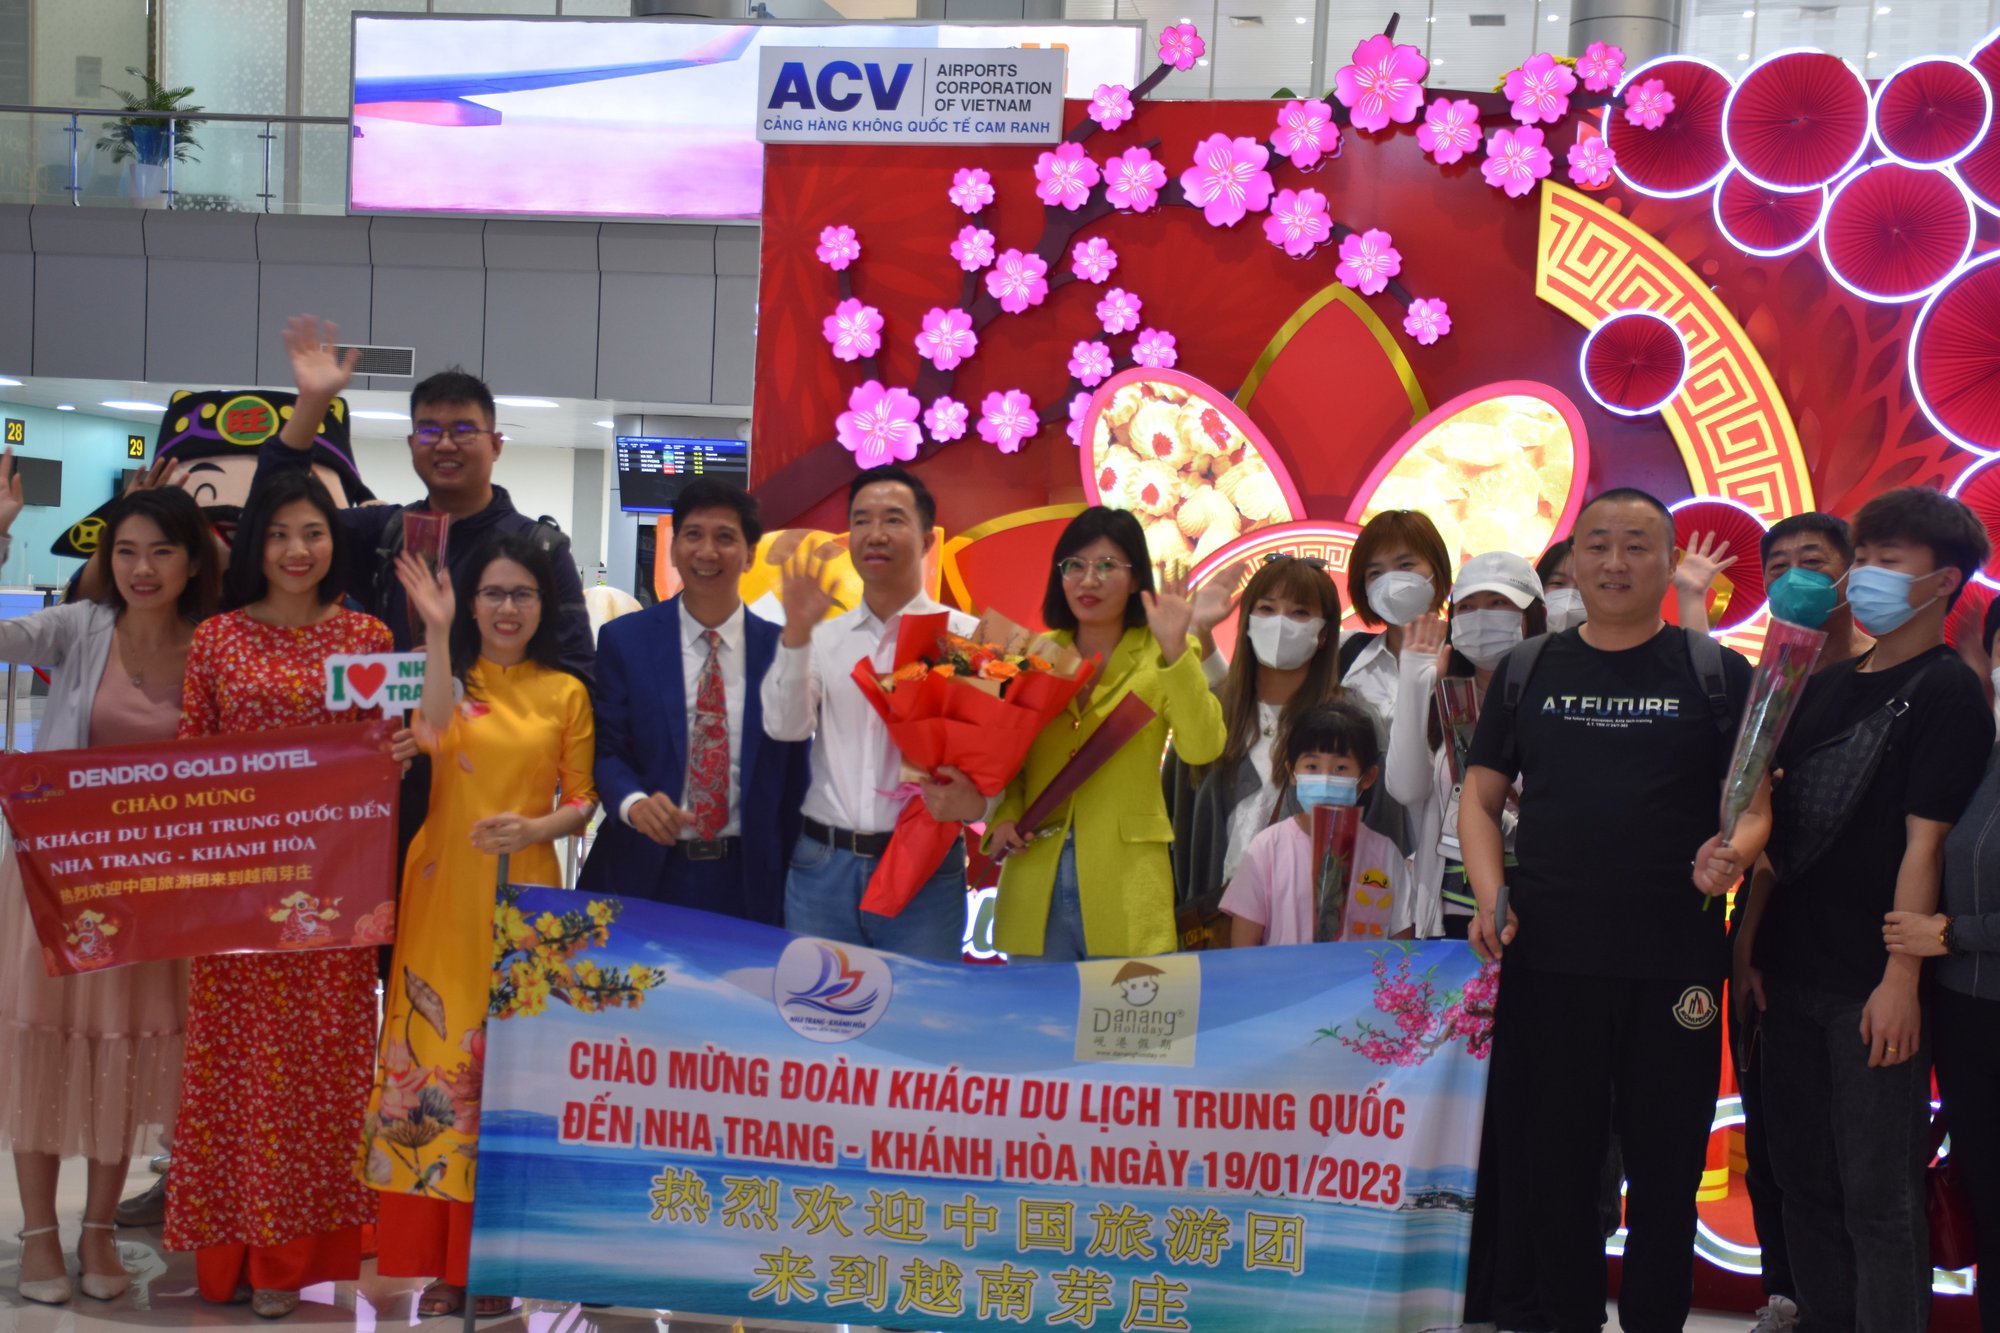  34 chuyến bay đến và đi của Hãng Vietjet Air từ Trung Quốc - Khánh Hòa và ngược lại. - Ảnh 1.